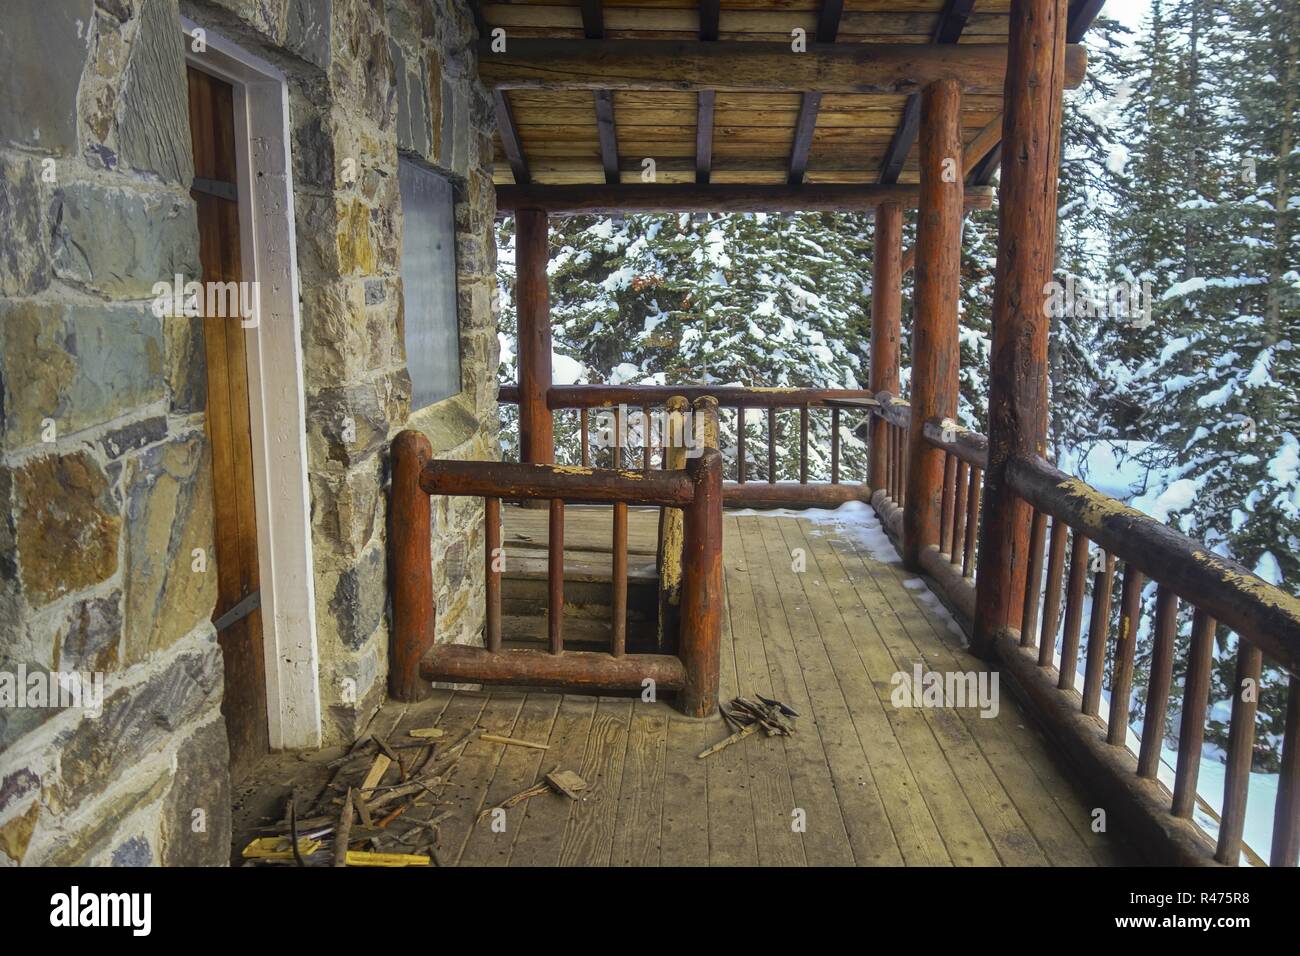 Rustikales Teehaus Aus Im Vintage-Stil, Holzhütte, Veranda Von Außen. Ebene des Six Glaciers Wanderwegs. Banff National Park Kanadische Rocky Mountains Winter Stockfoto